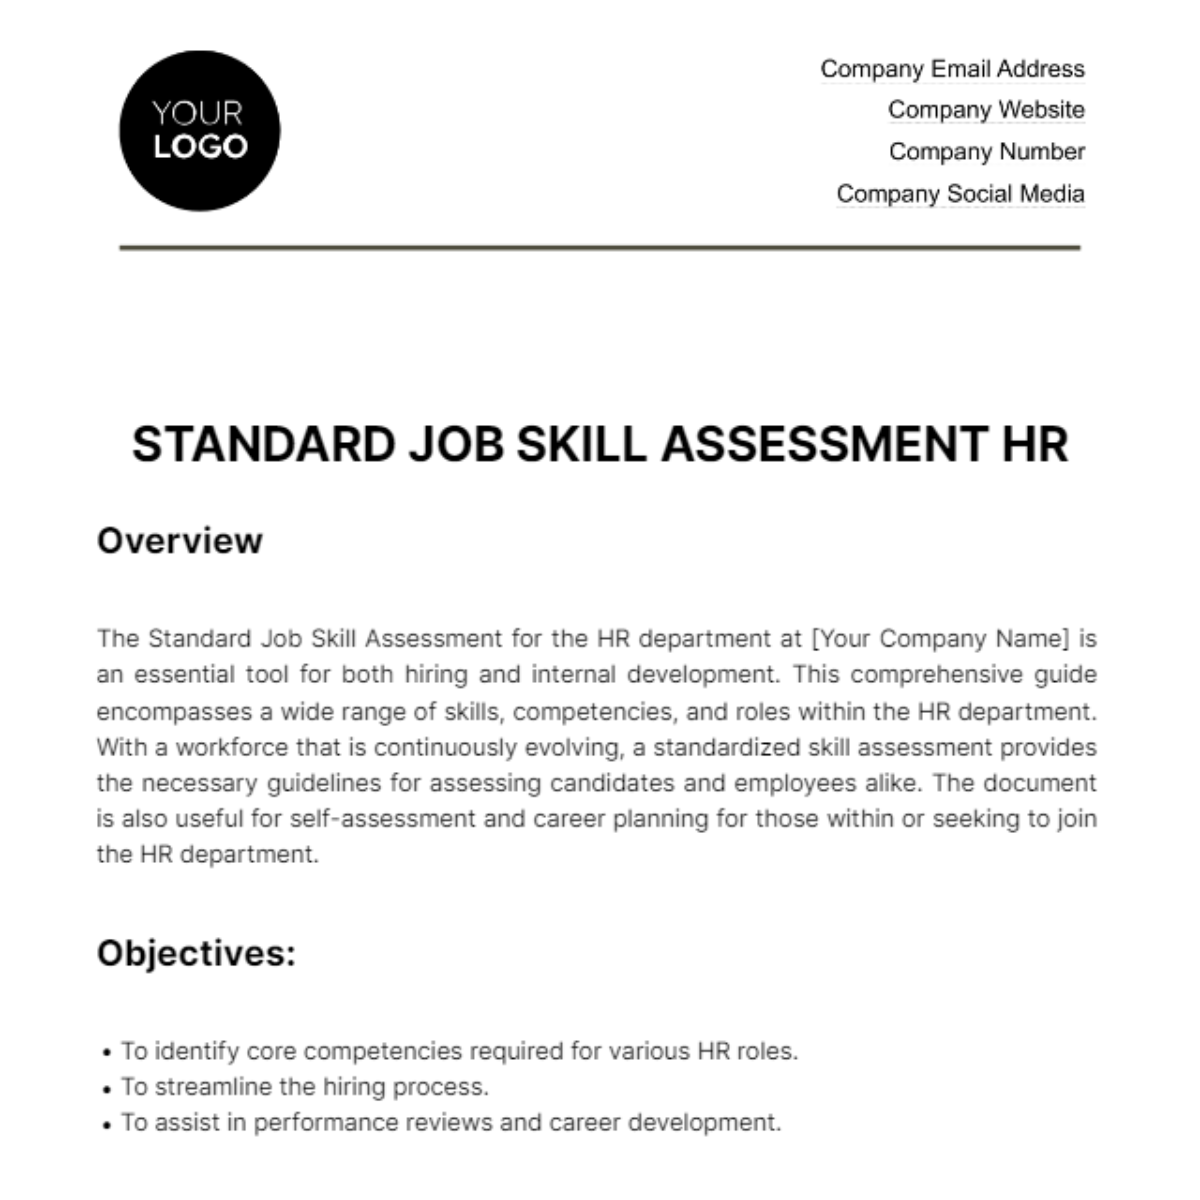 Free Standard Job Skill Assessment HR Template